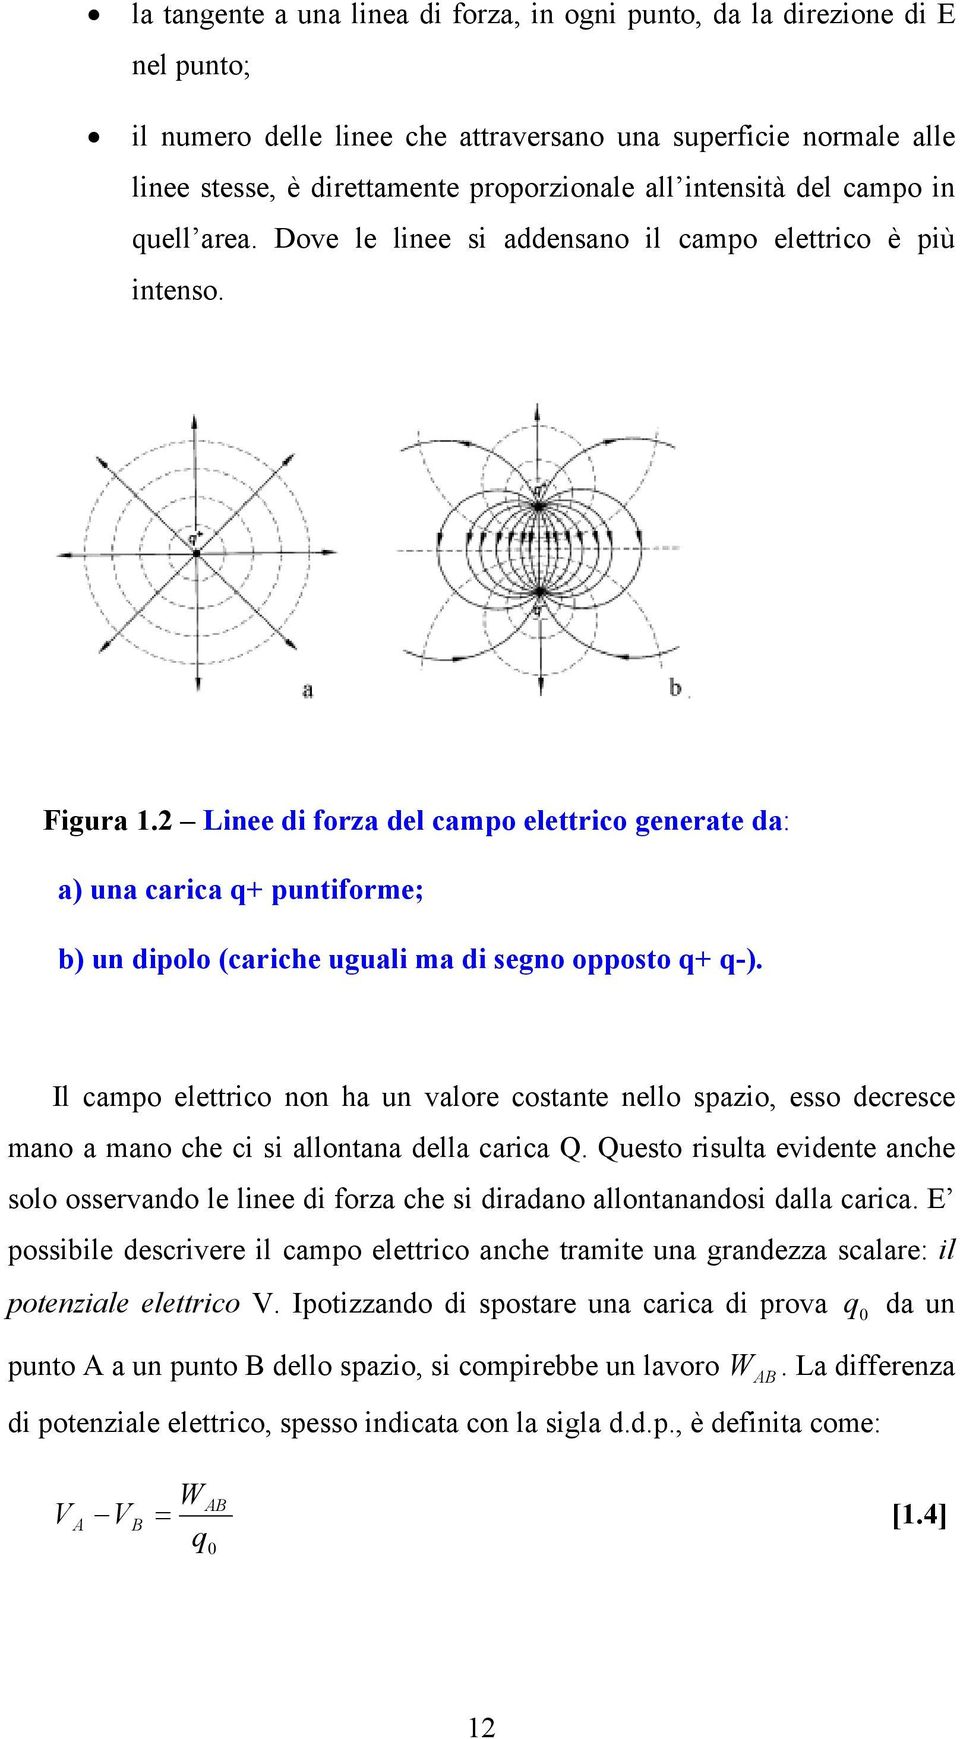 Linee di forza del campo elettrico generate da: a) una carica q+ puntiforme; b) un dipolo (cariche uguali ma di segno opposto q+ q-).